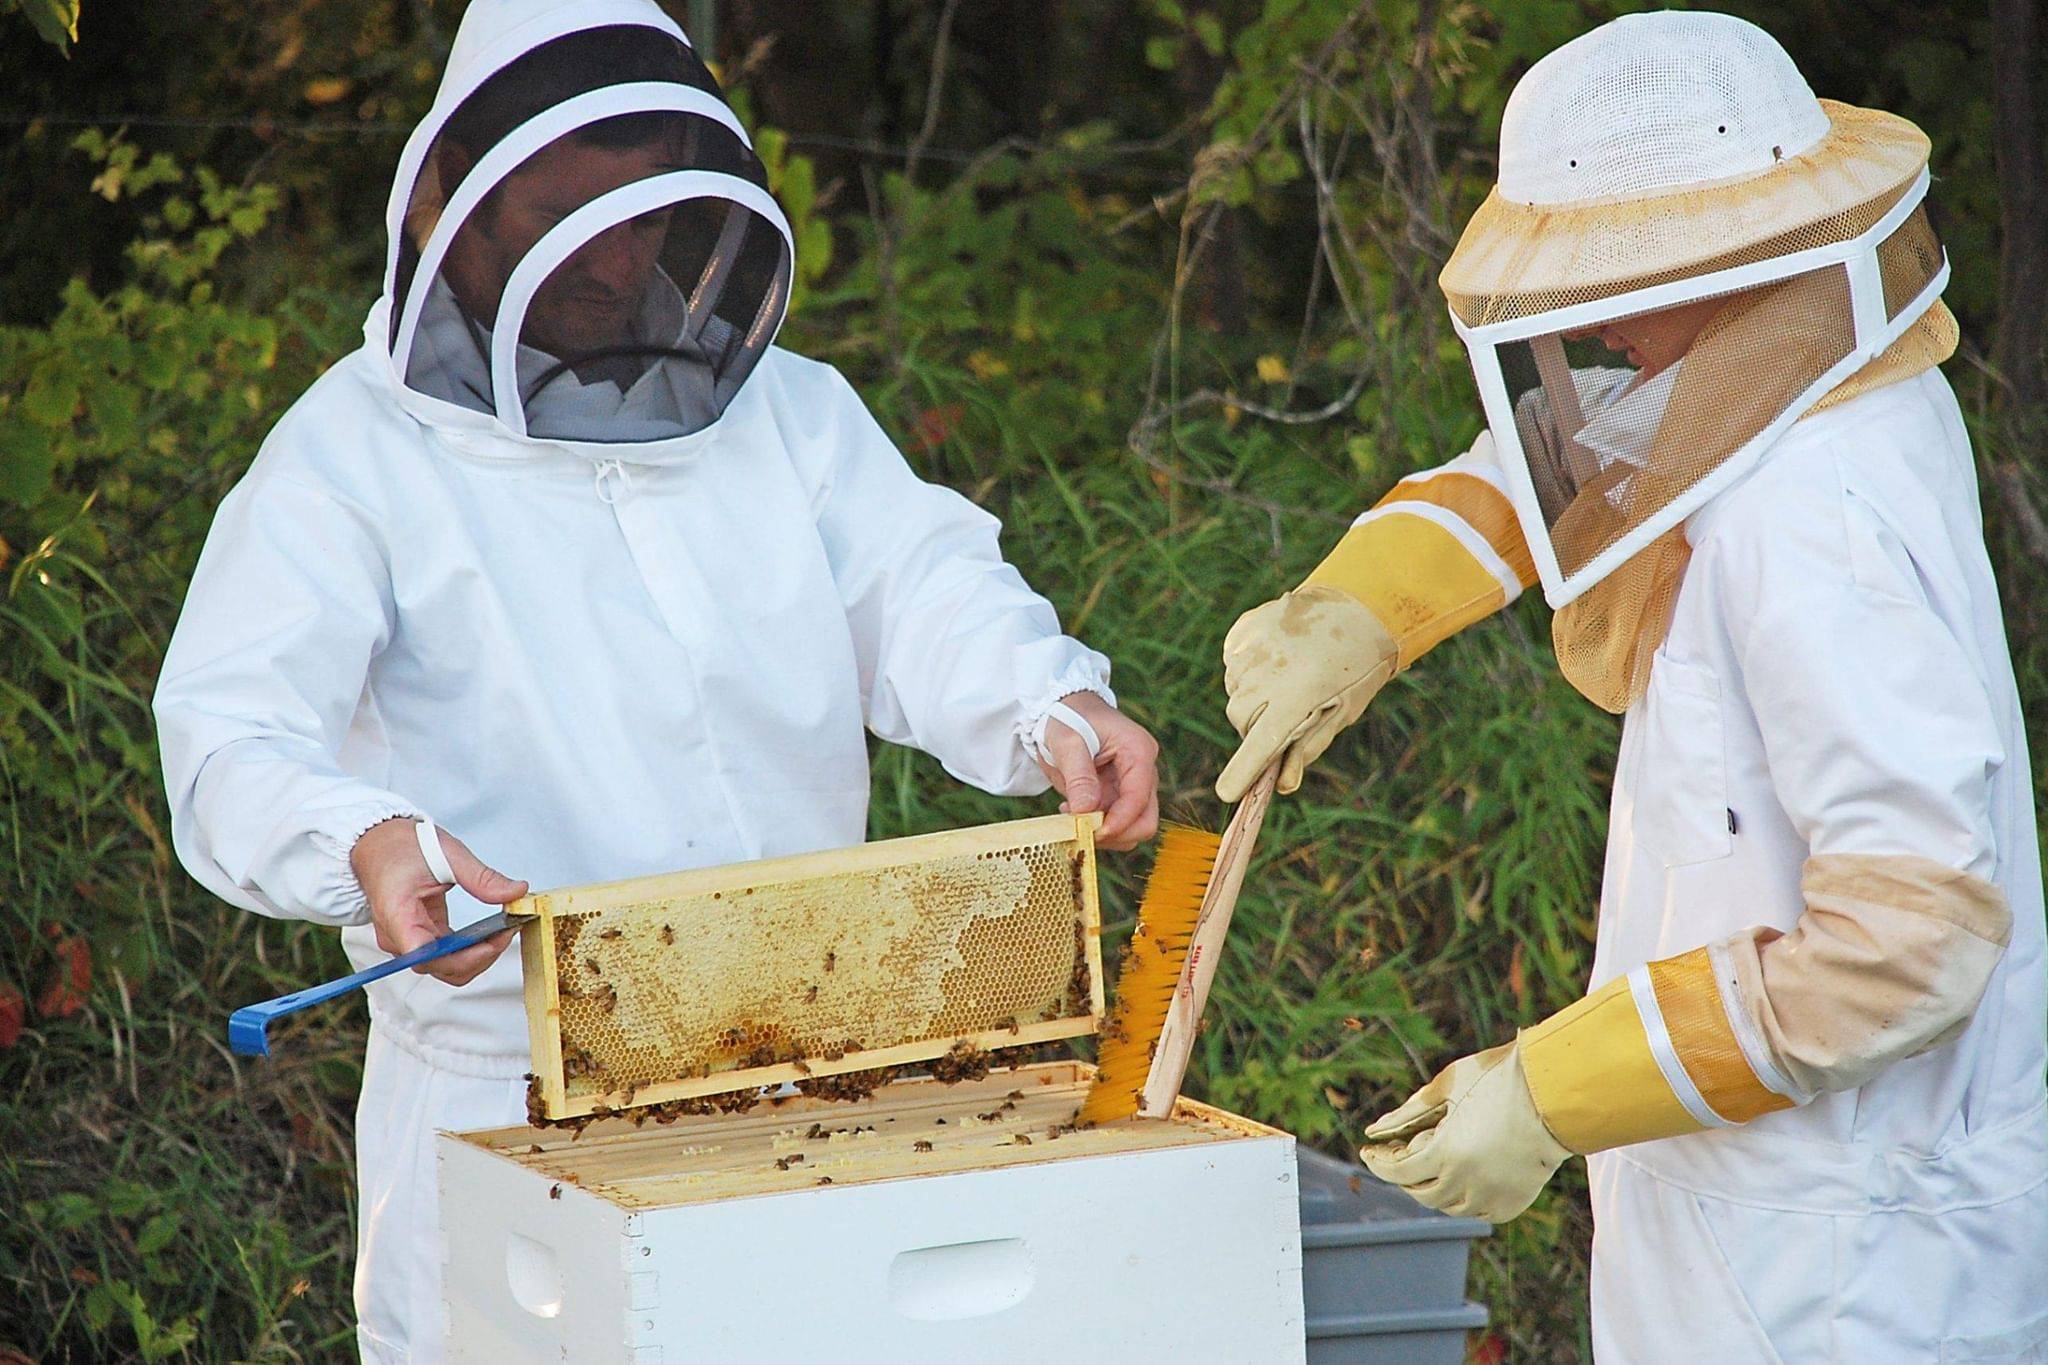 8 продуктов пчеловодства и их применение